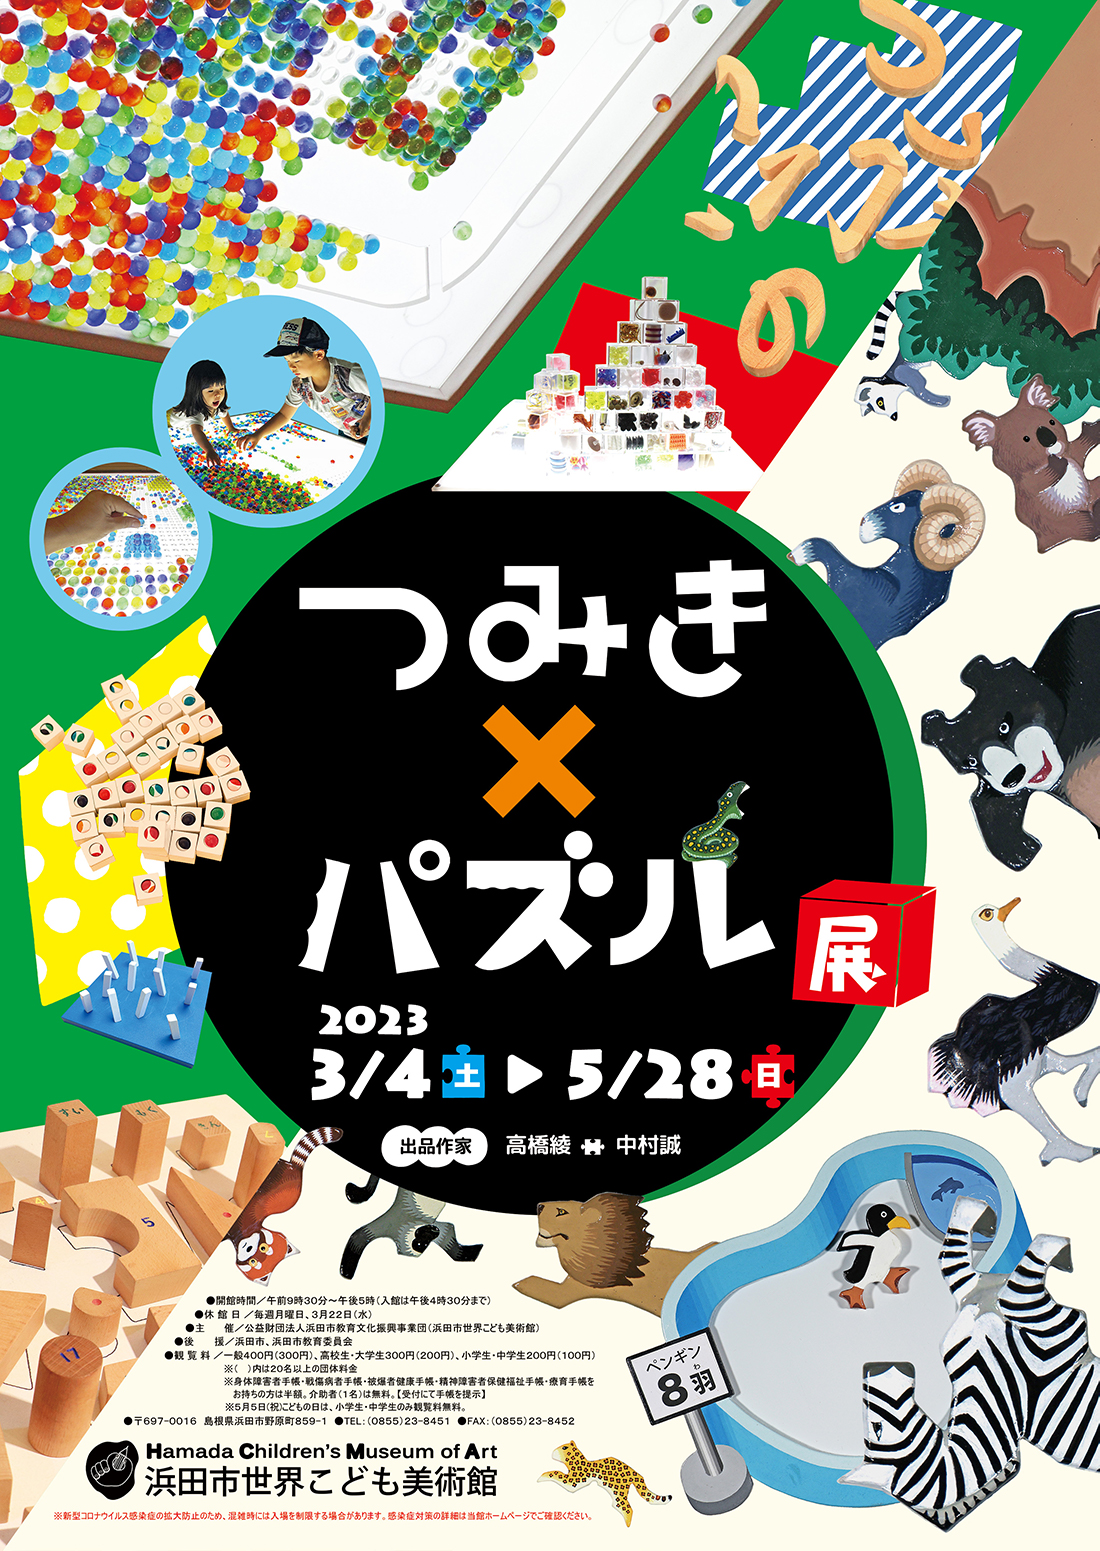 つみき×パズル展 企画展のご案内 浜田市世界こども美術館